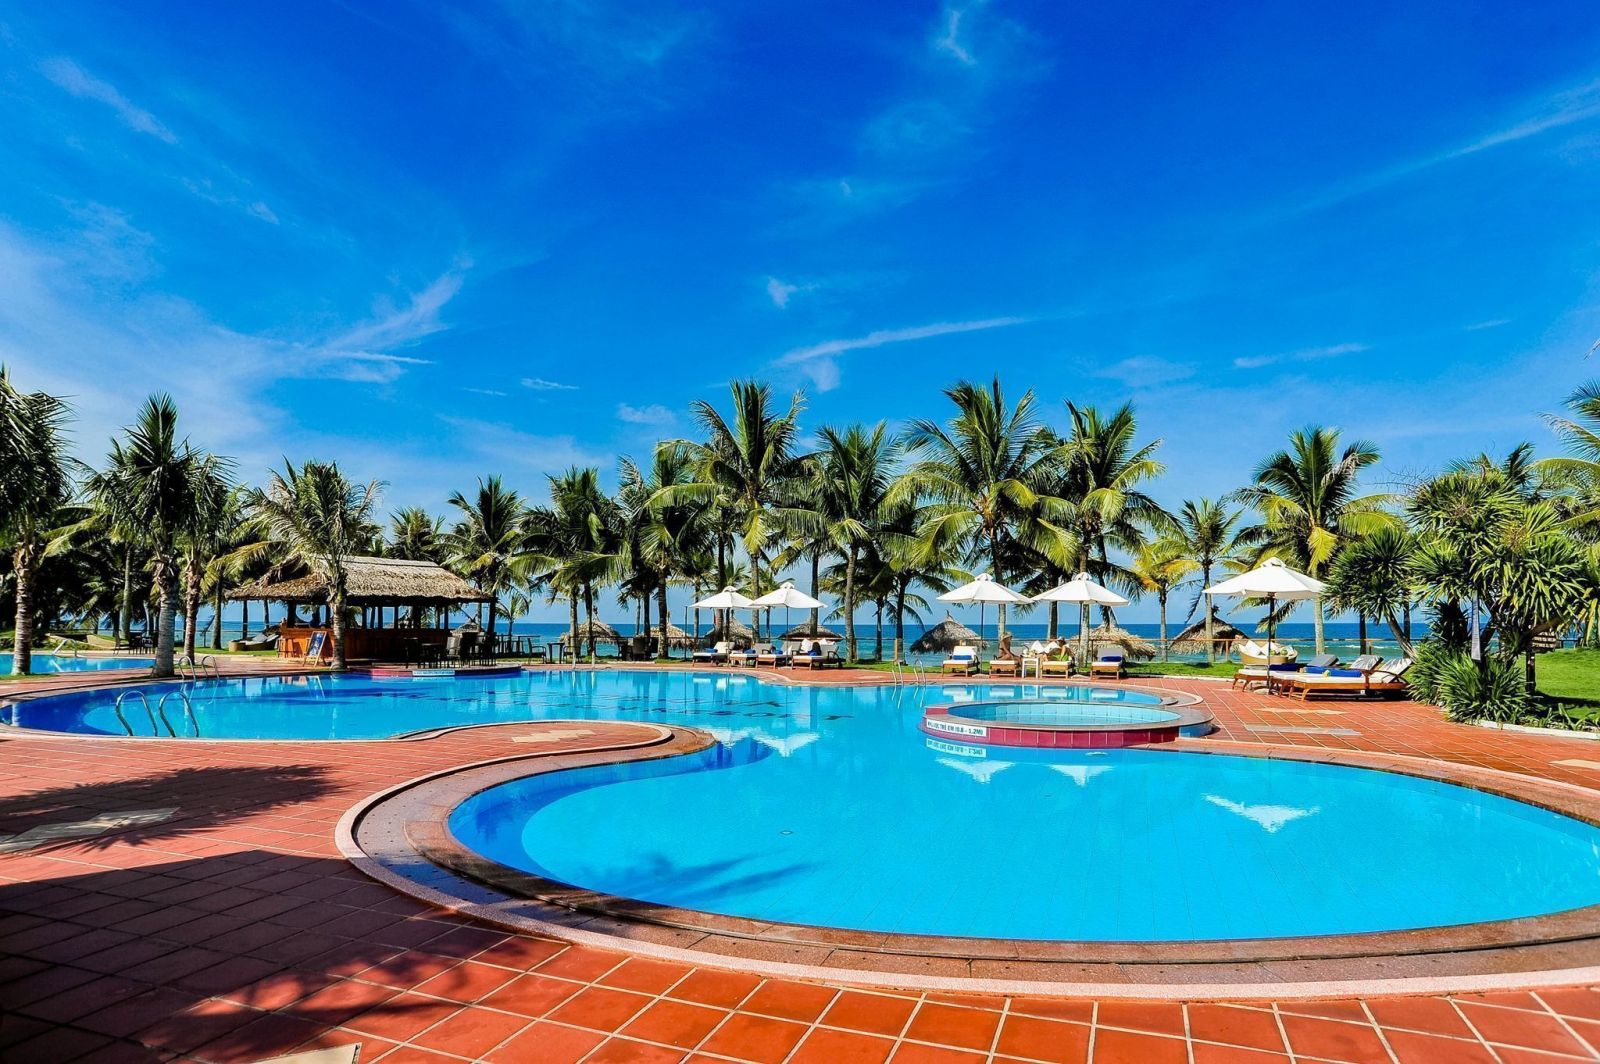 Hồ bơi ngoài trời trong xanh mát mẻ tại Khách sạn Tropical Beach Hội An 4 Sao